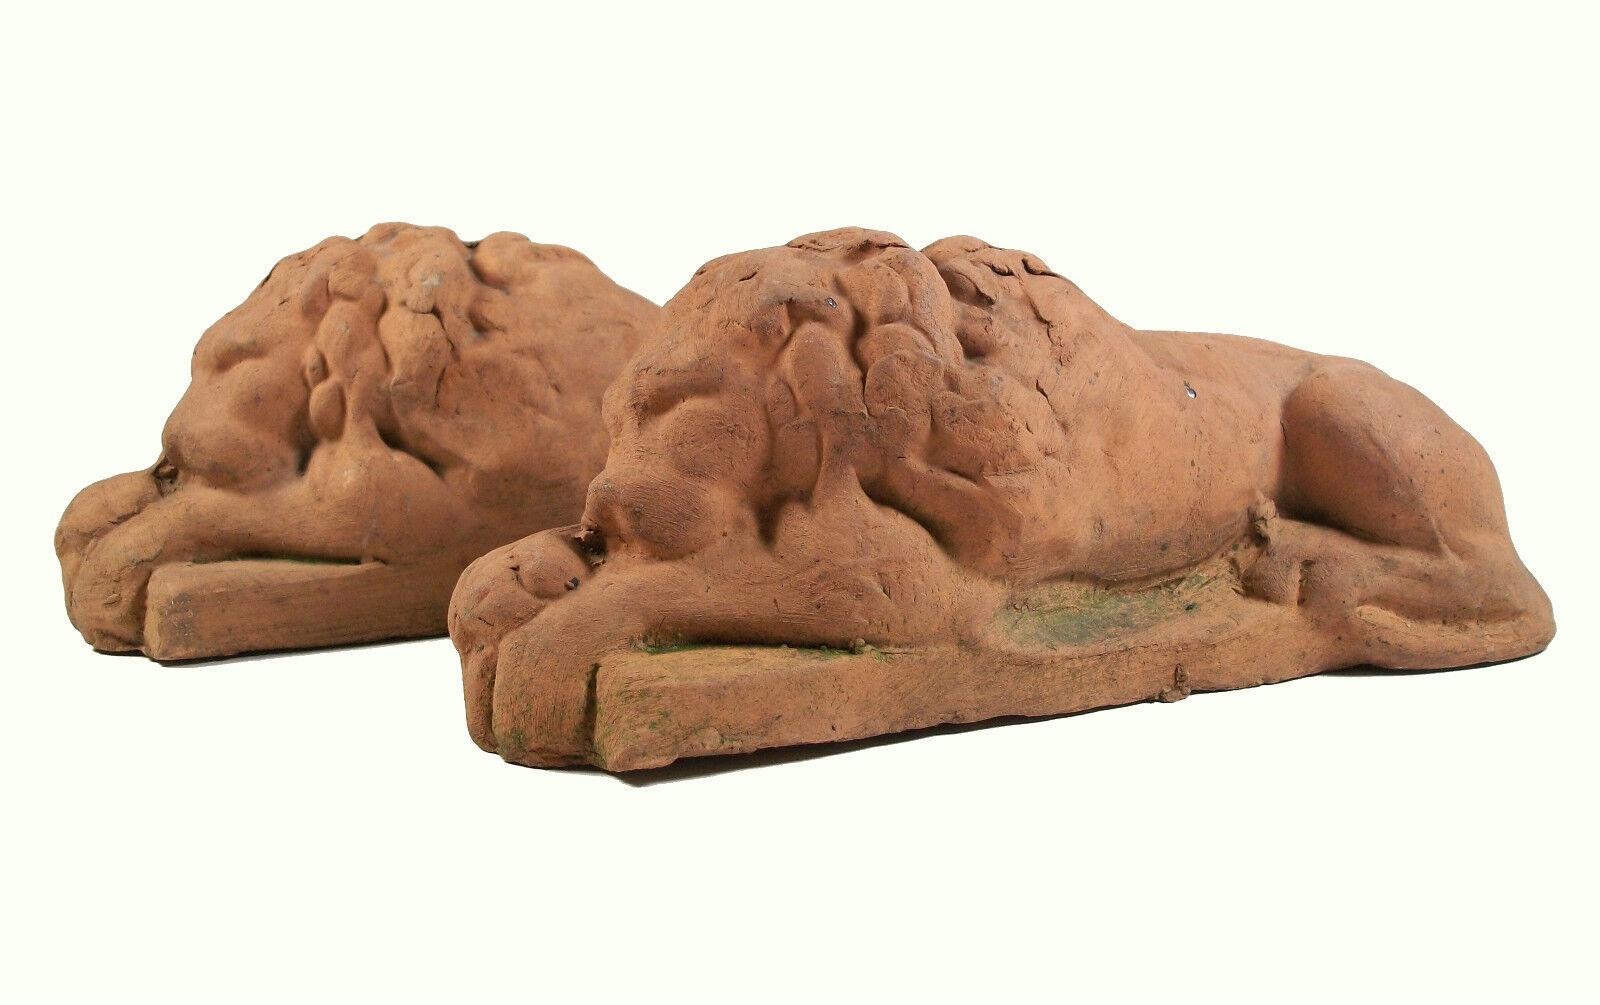 Antikes Paar liegender Terrakotta-Löwen im klassizistischen Stil - unsigniert - kontinental - spätes 19./frühes 20. Jahrhundert.

Der Gesamtzustand dieses Paares von antiken Gegenständen aus Vorbesitz ist ausgezeichnet - kein Verlust - keine